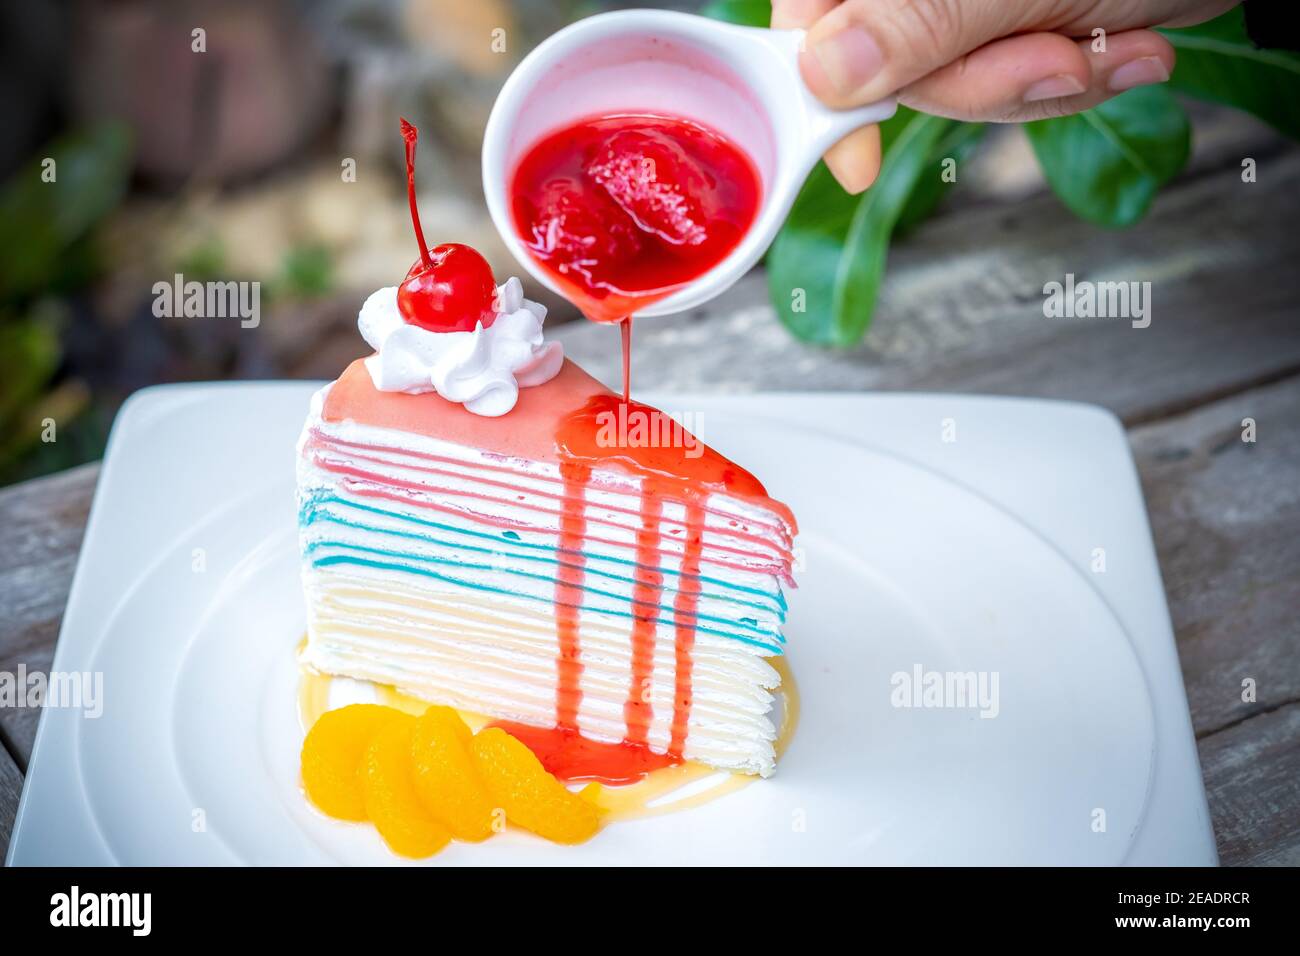 Gâteau à la crêpe arc-en-ciel et une cerise avec sauce aux fraises à la main sur le dessus, fond de table en bois. Banque D'Images